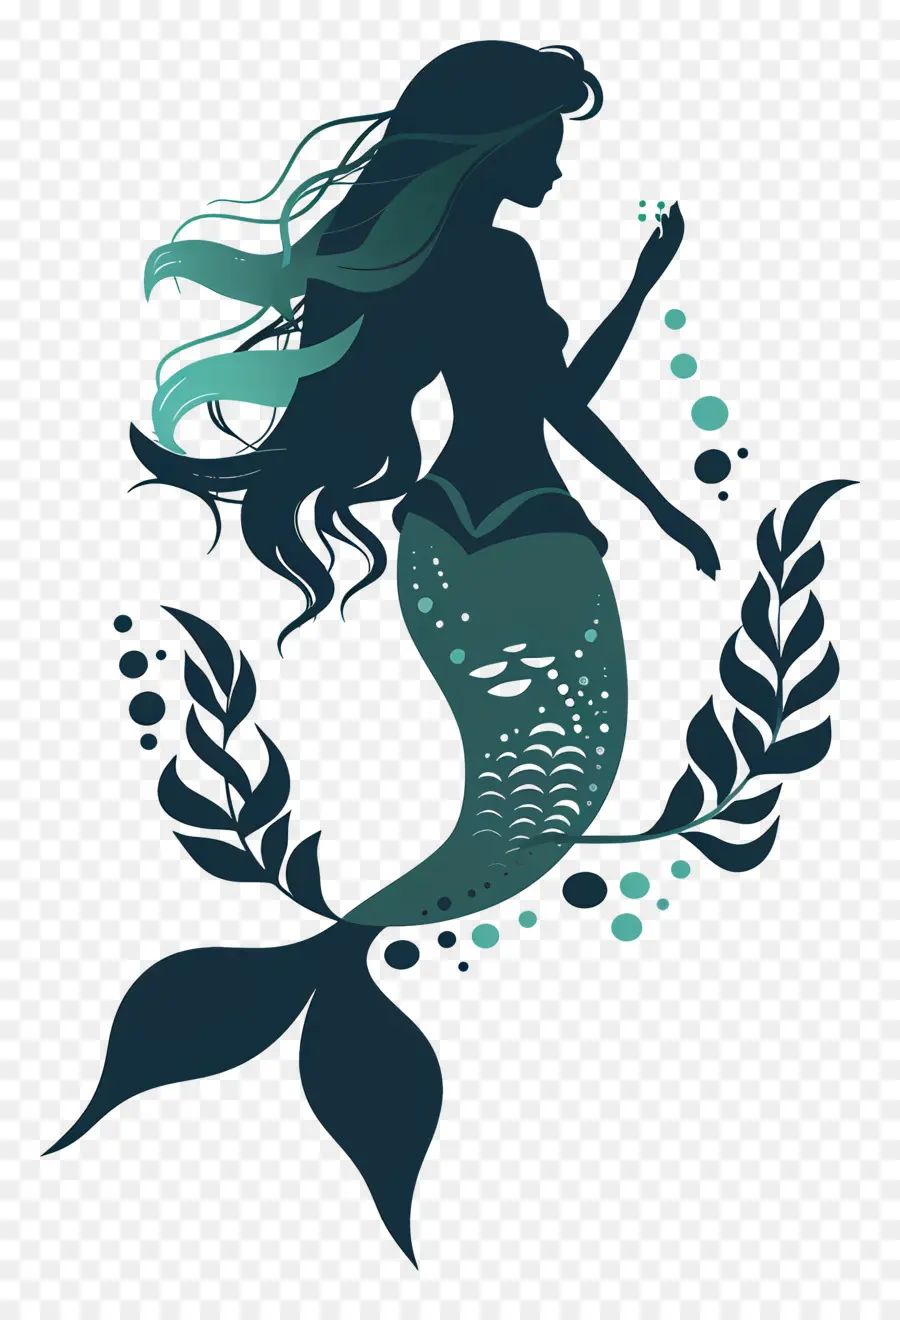 sirenetta sirenetta sirena oceano sottomarino - Sirenetta silhouette che tiene guscio sott'acqua, abito blu